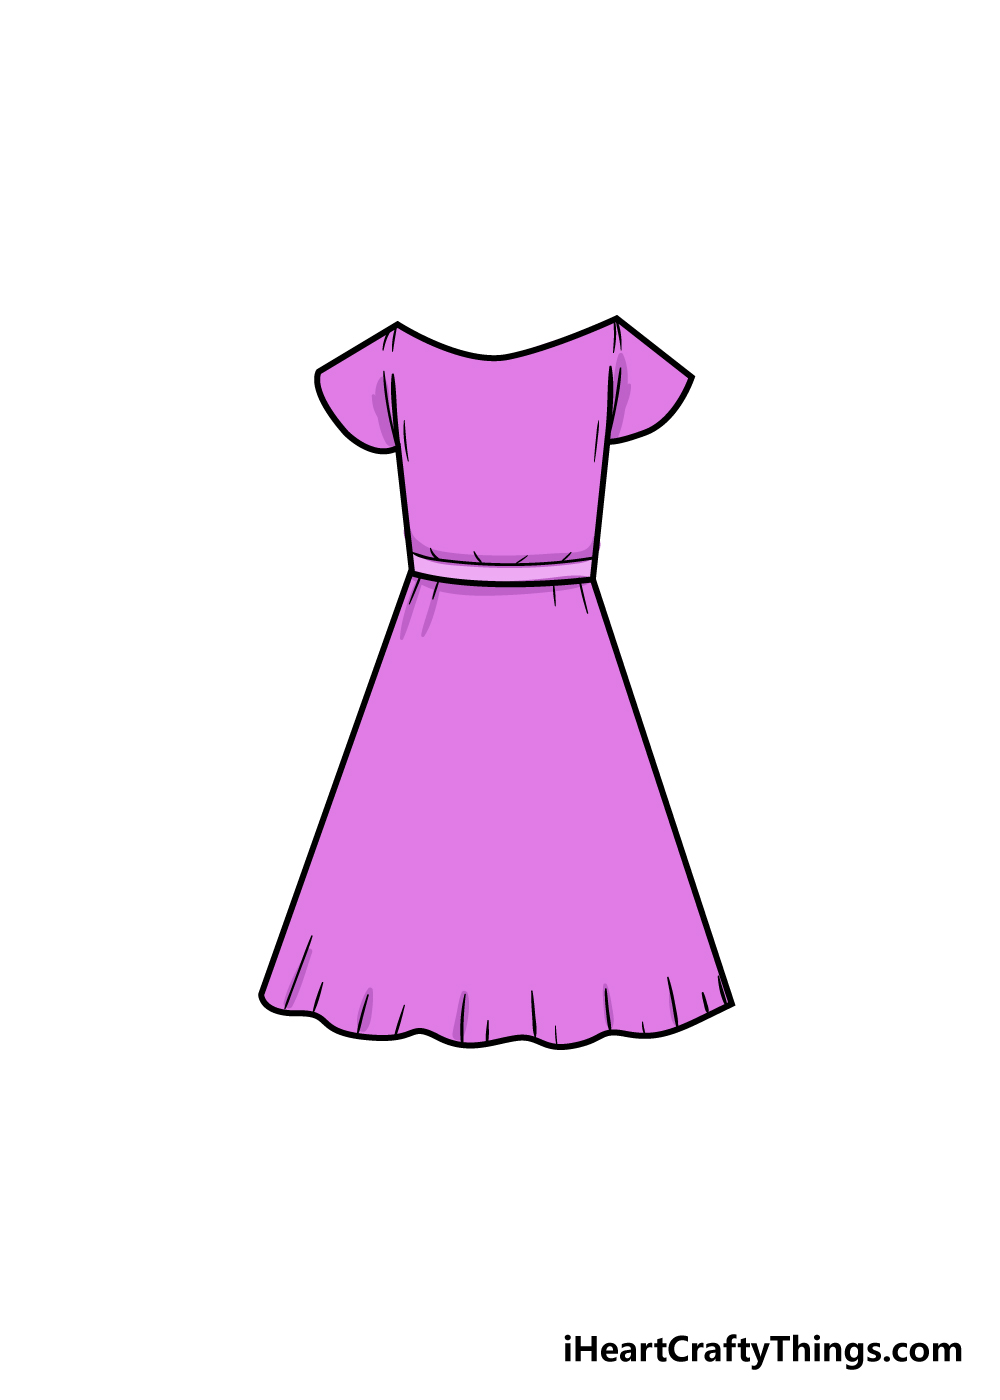 dress 7 - Hướng dẫn cách vẽ váy đơn giản với 7 bước cơ bản